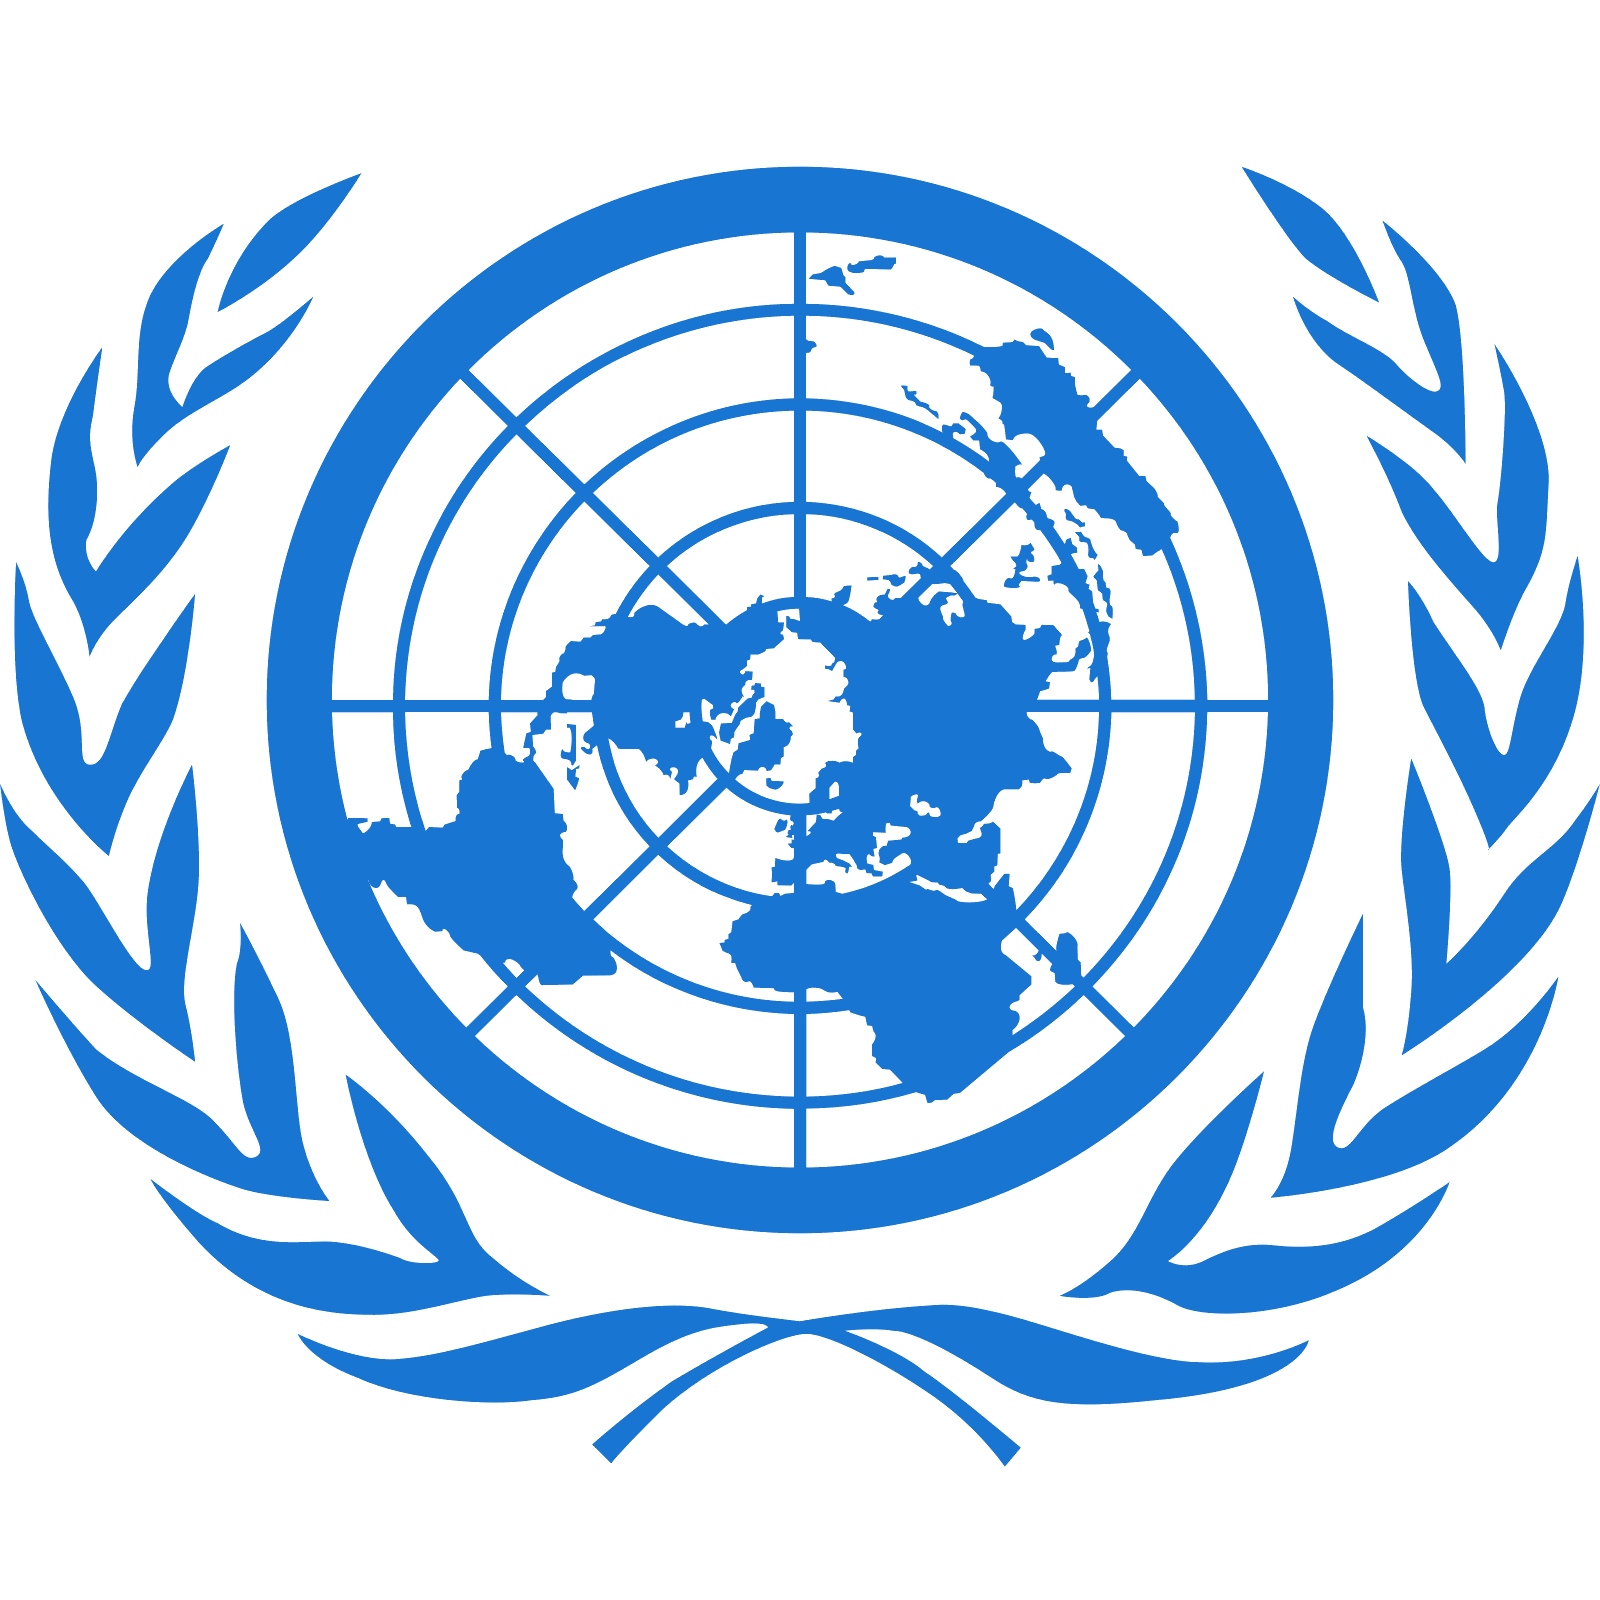 United Nations Logo - United Nations Logo Vector Image Logo Image